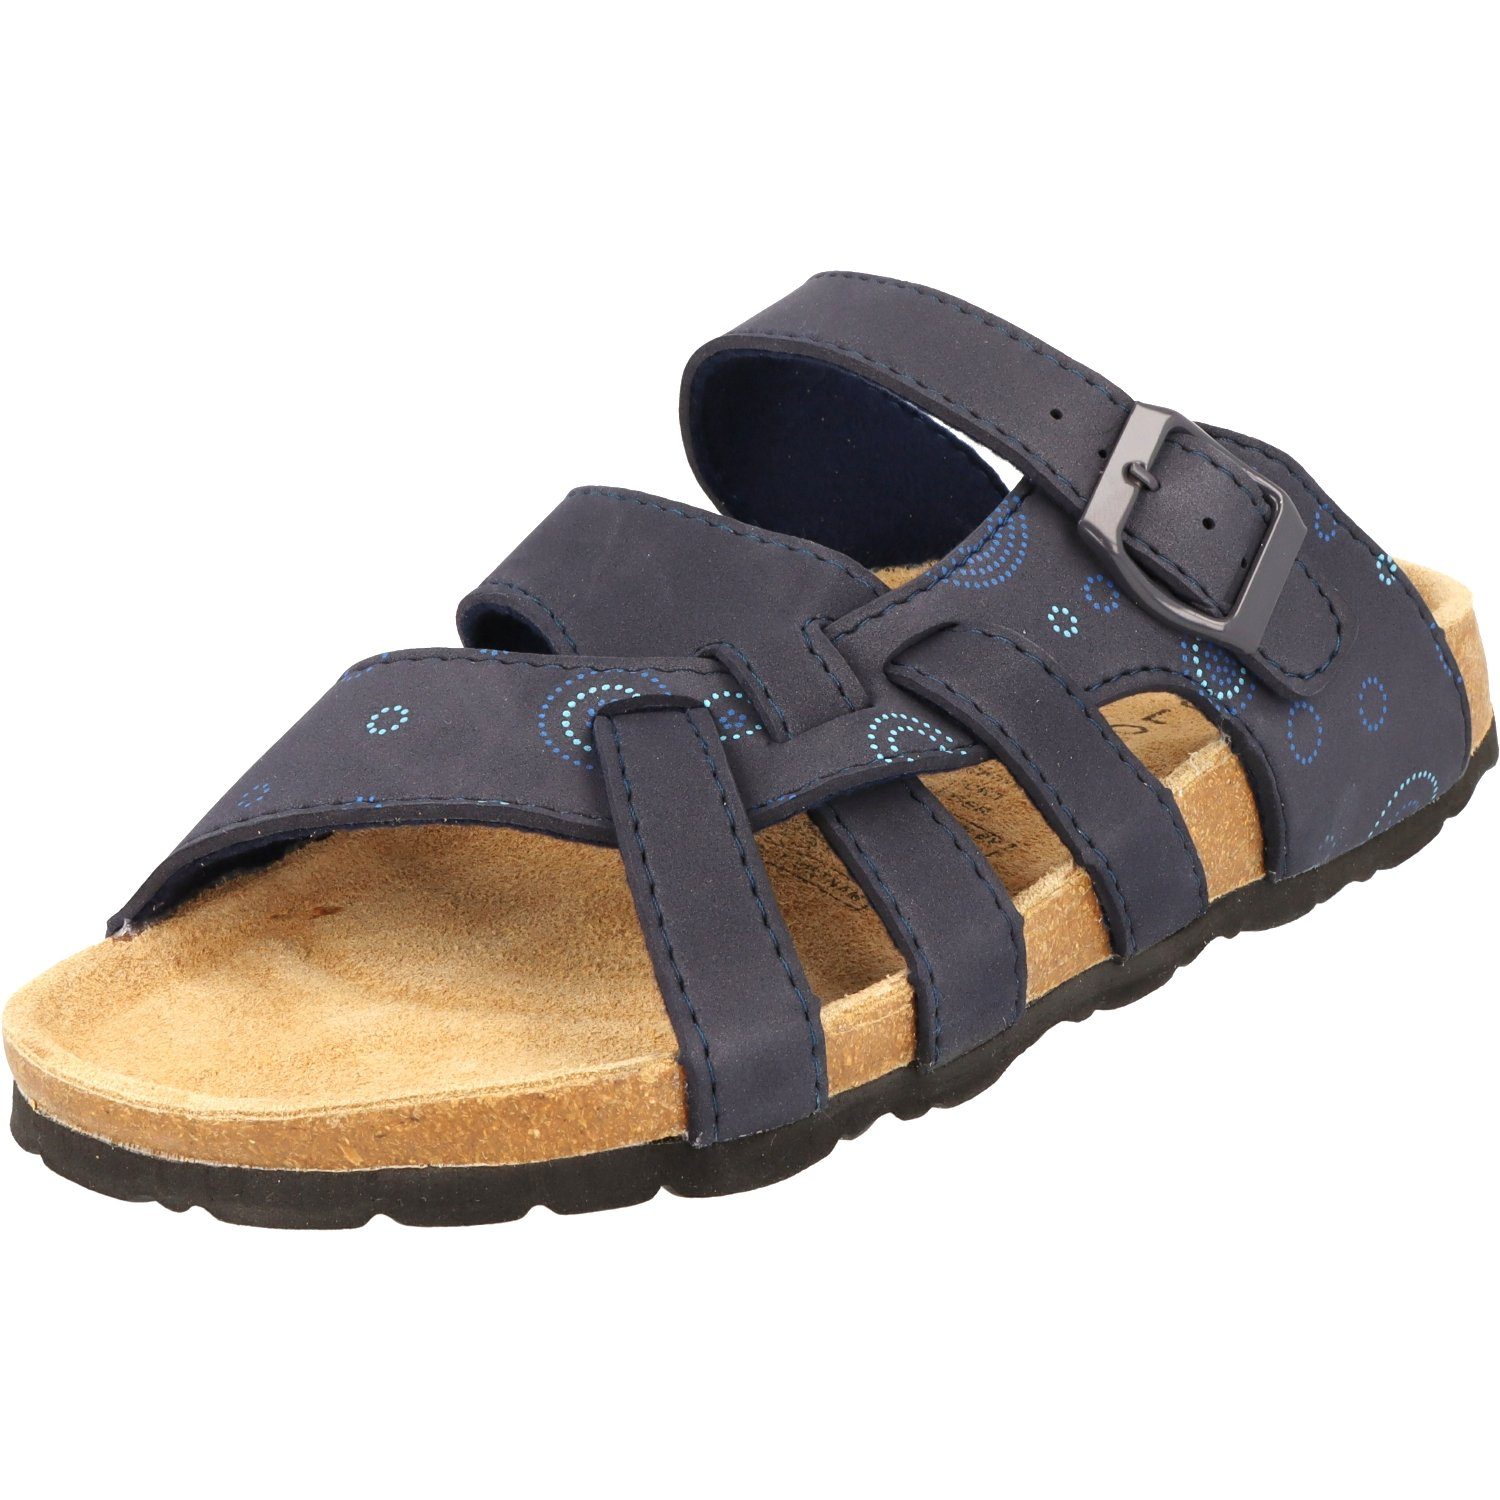 Cloxx Damen Schuhe T67913 Hausschuhe Sandale Lederfußbett Pantolette Dunkelblau